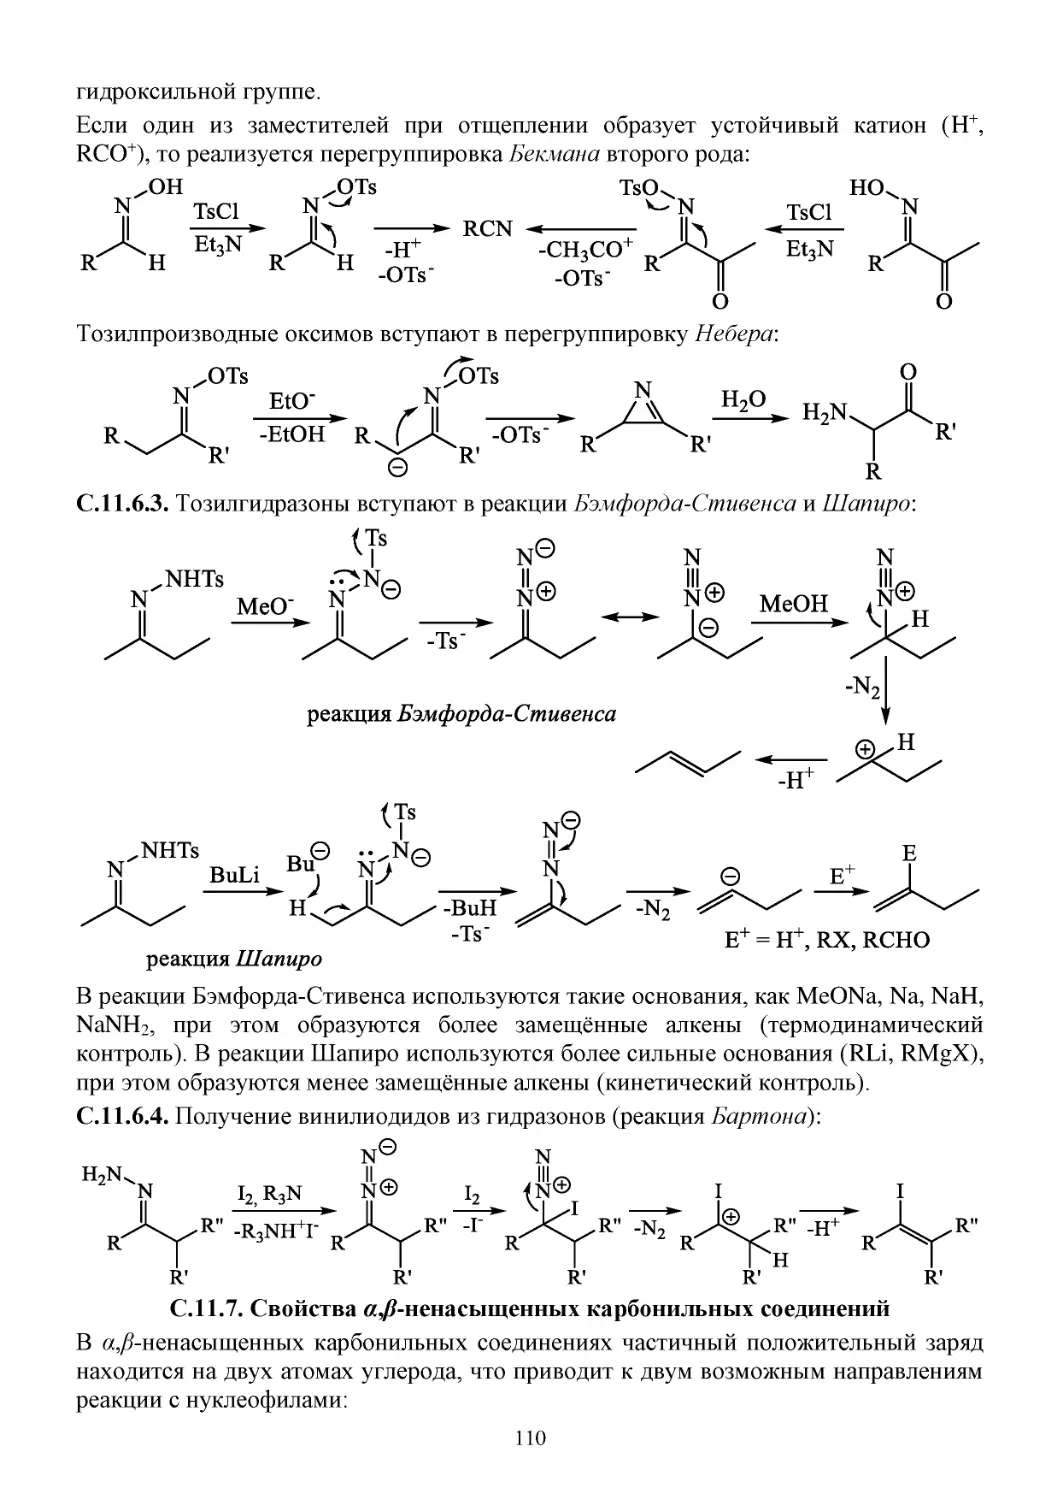 С.11.7. Свойства α,β-ненасыщенных карбонильных соединений